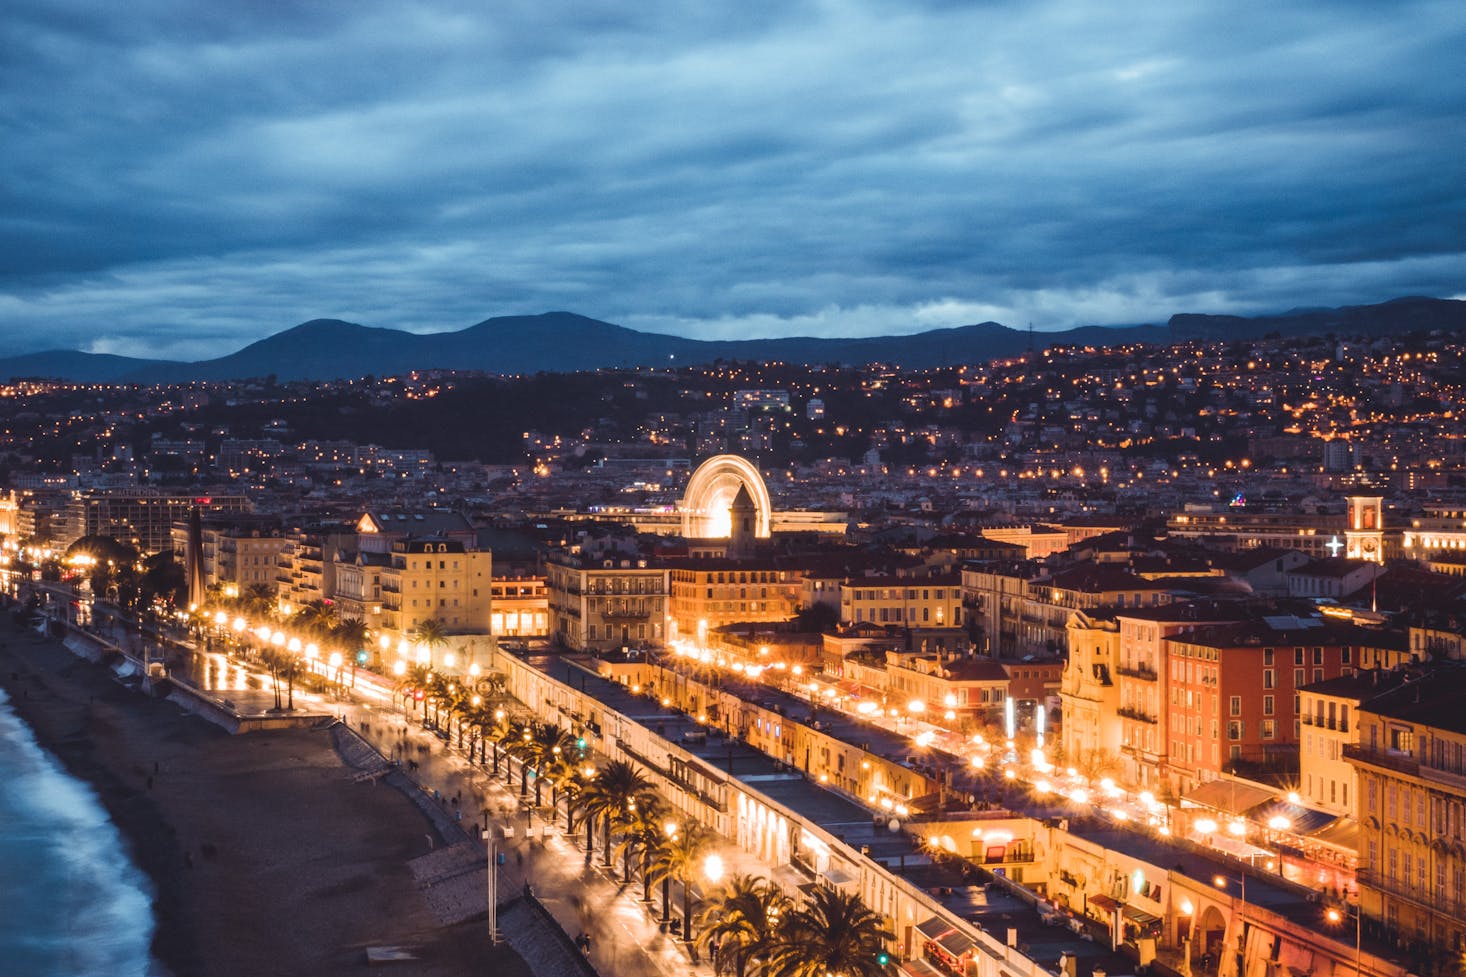 Romantic restaurants in Nice